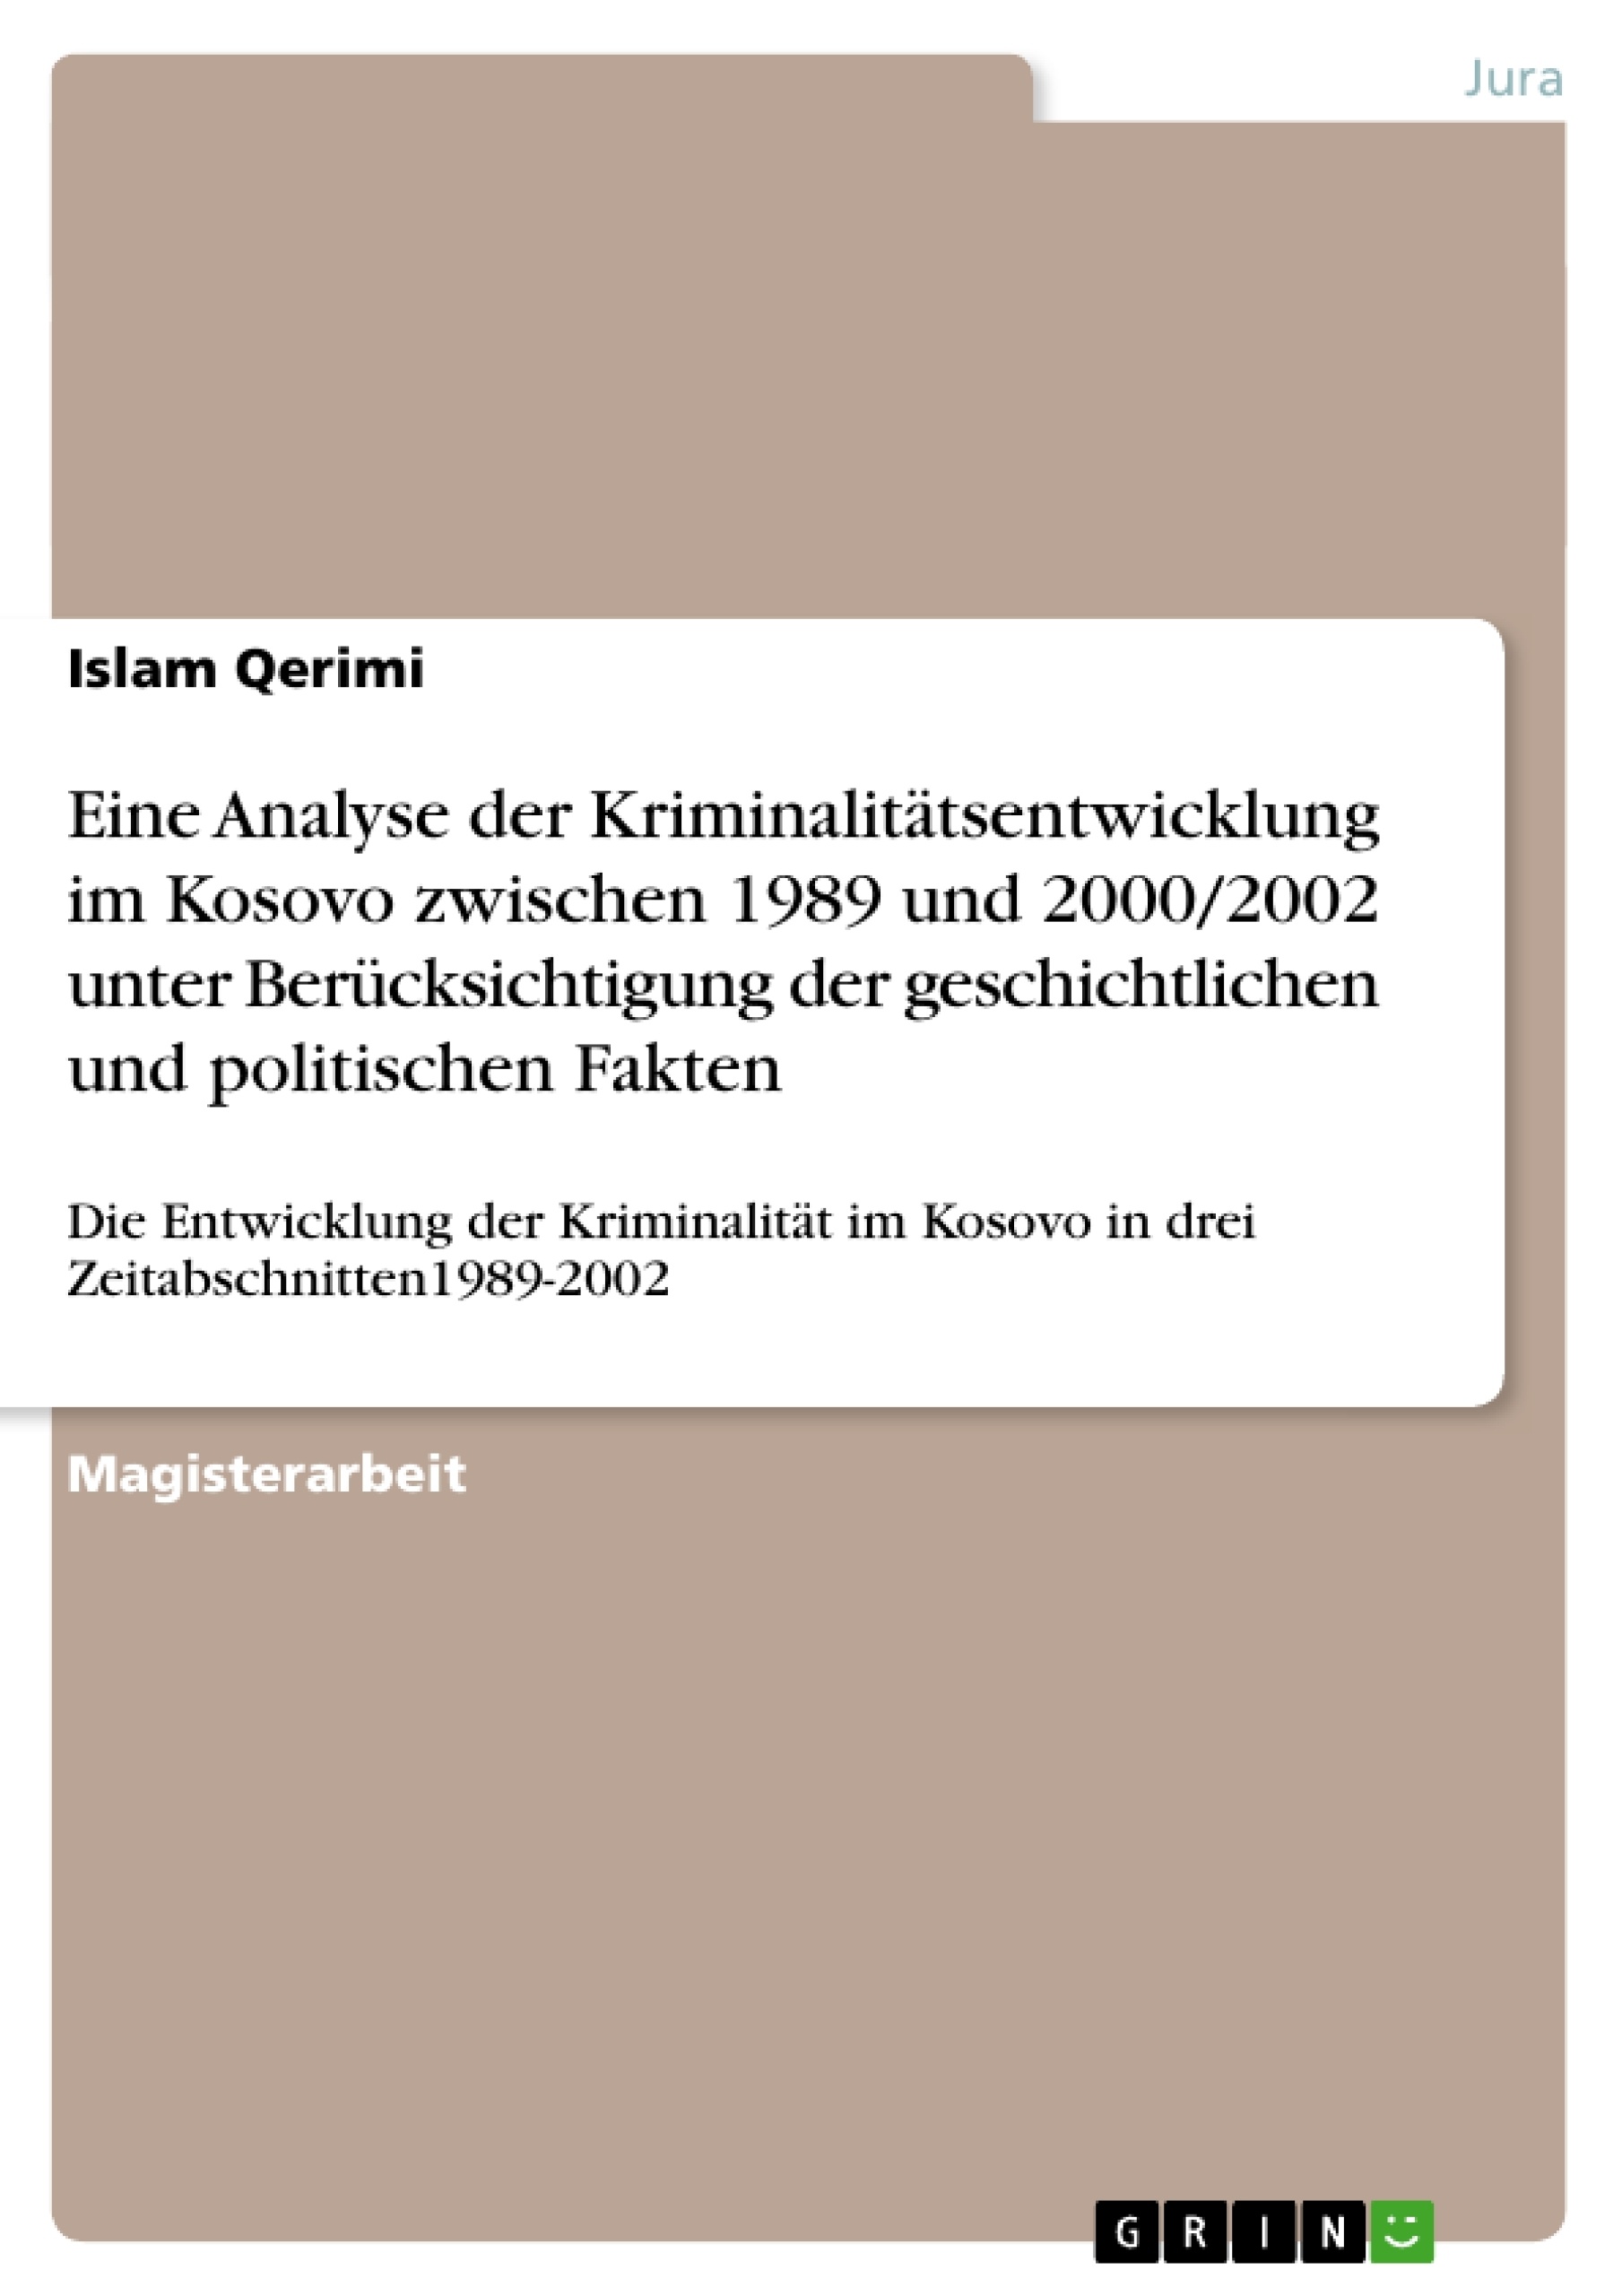 Título: Eine  Analyse der Kriminalitätsentwicklung im Kosovo zwischen 1989 und 2000/2002 unter Berücksichtigung der geschichtlichen und politischen Fakten 